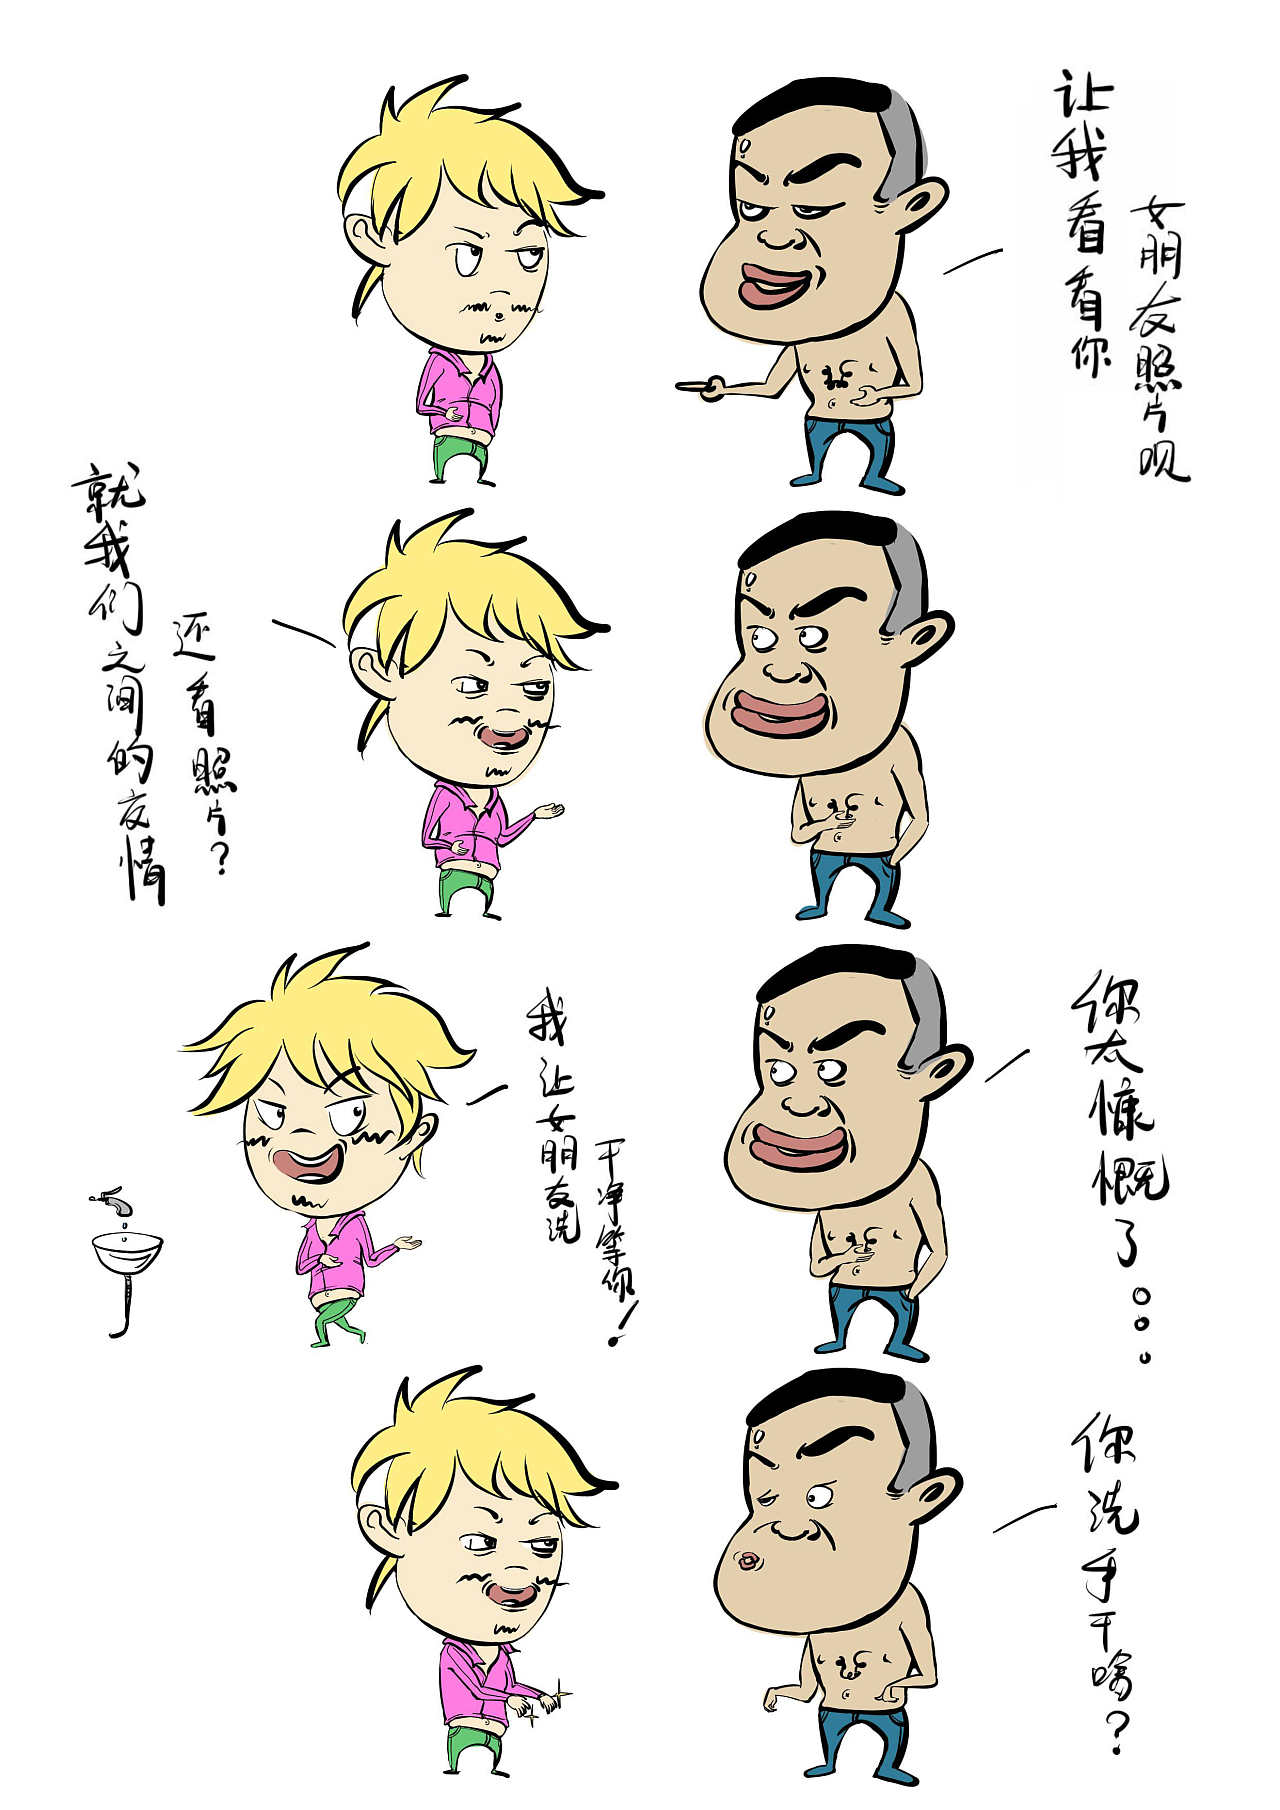 毒鸡汤四格漫画调侃搞笑段子图插画图片-千库网